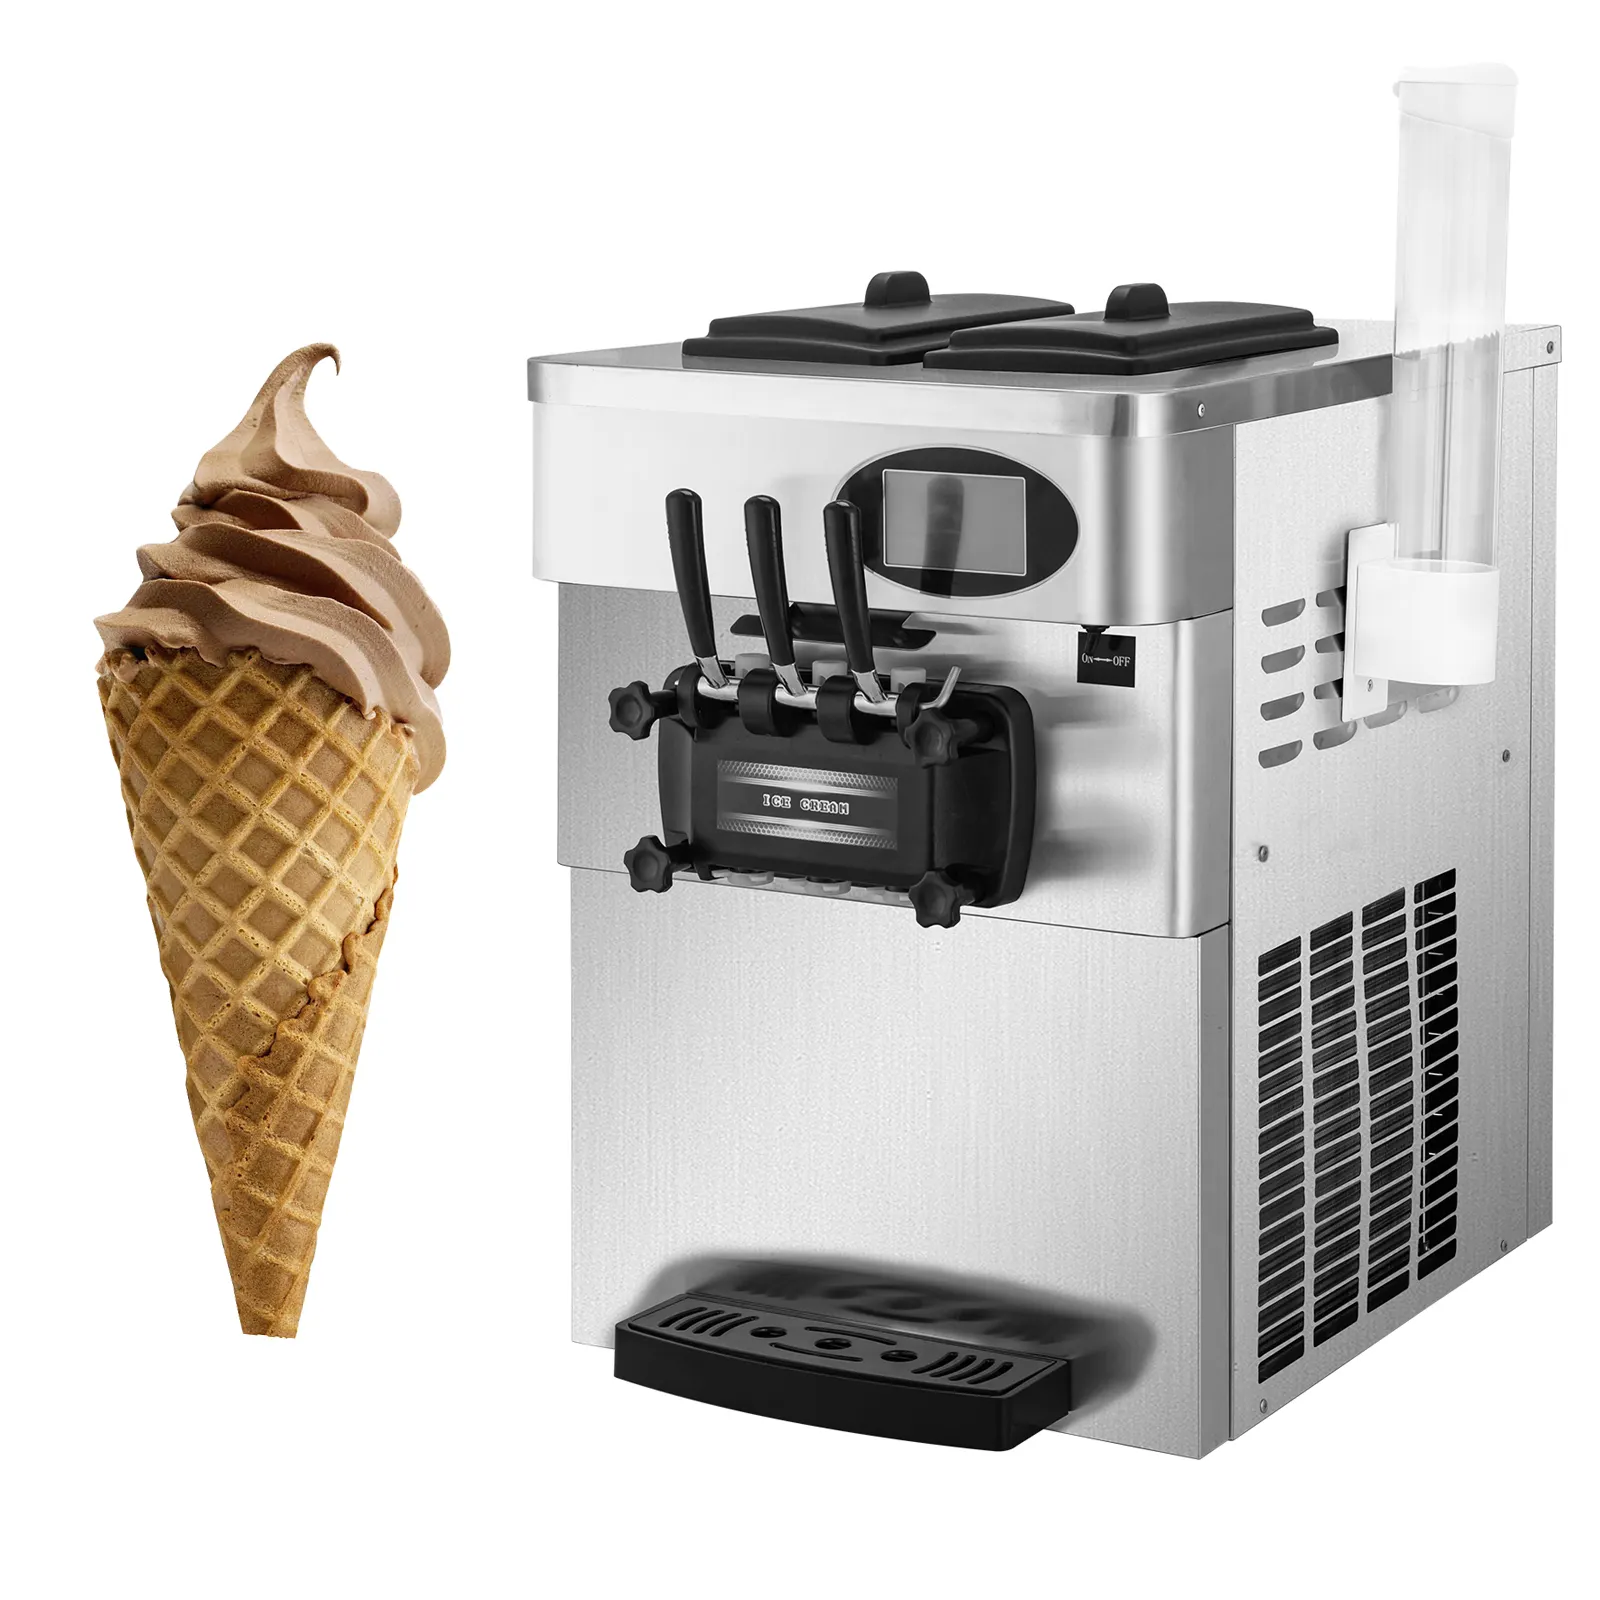 Top macchina per fare il ghiaccio soft ice cream macchina per la vendita